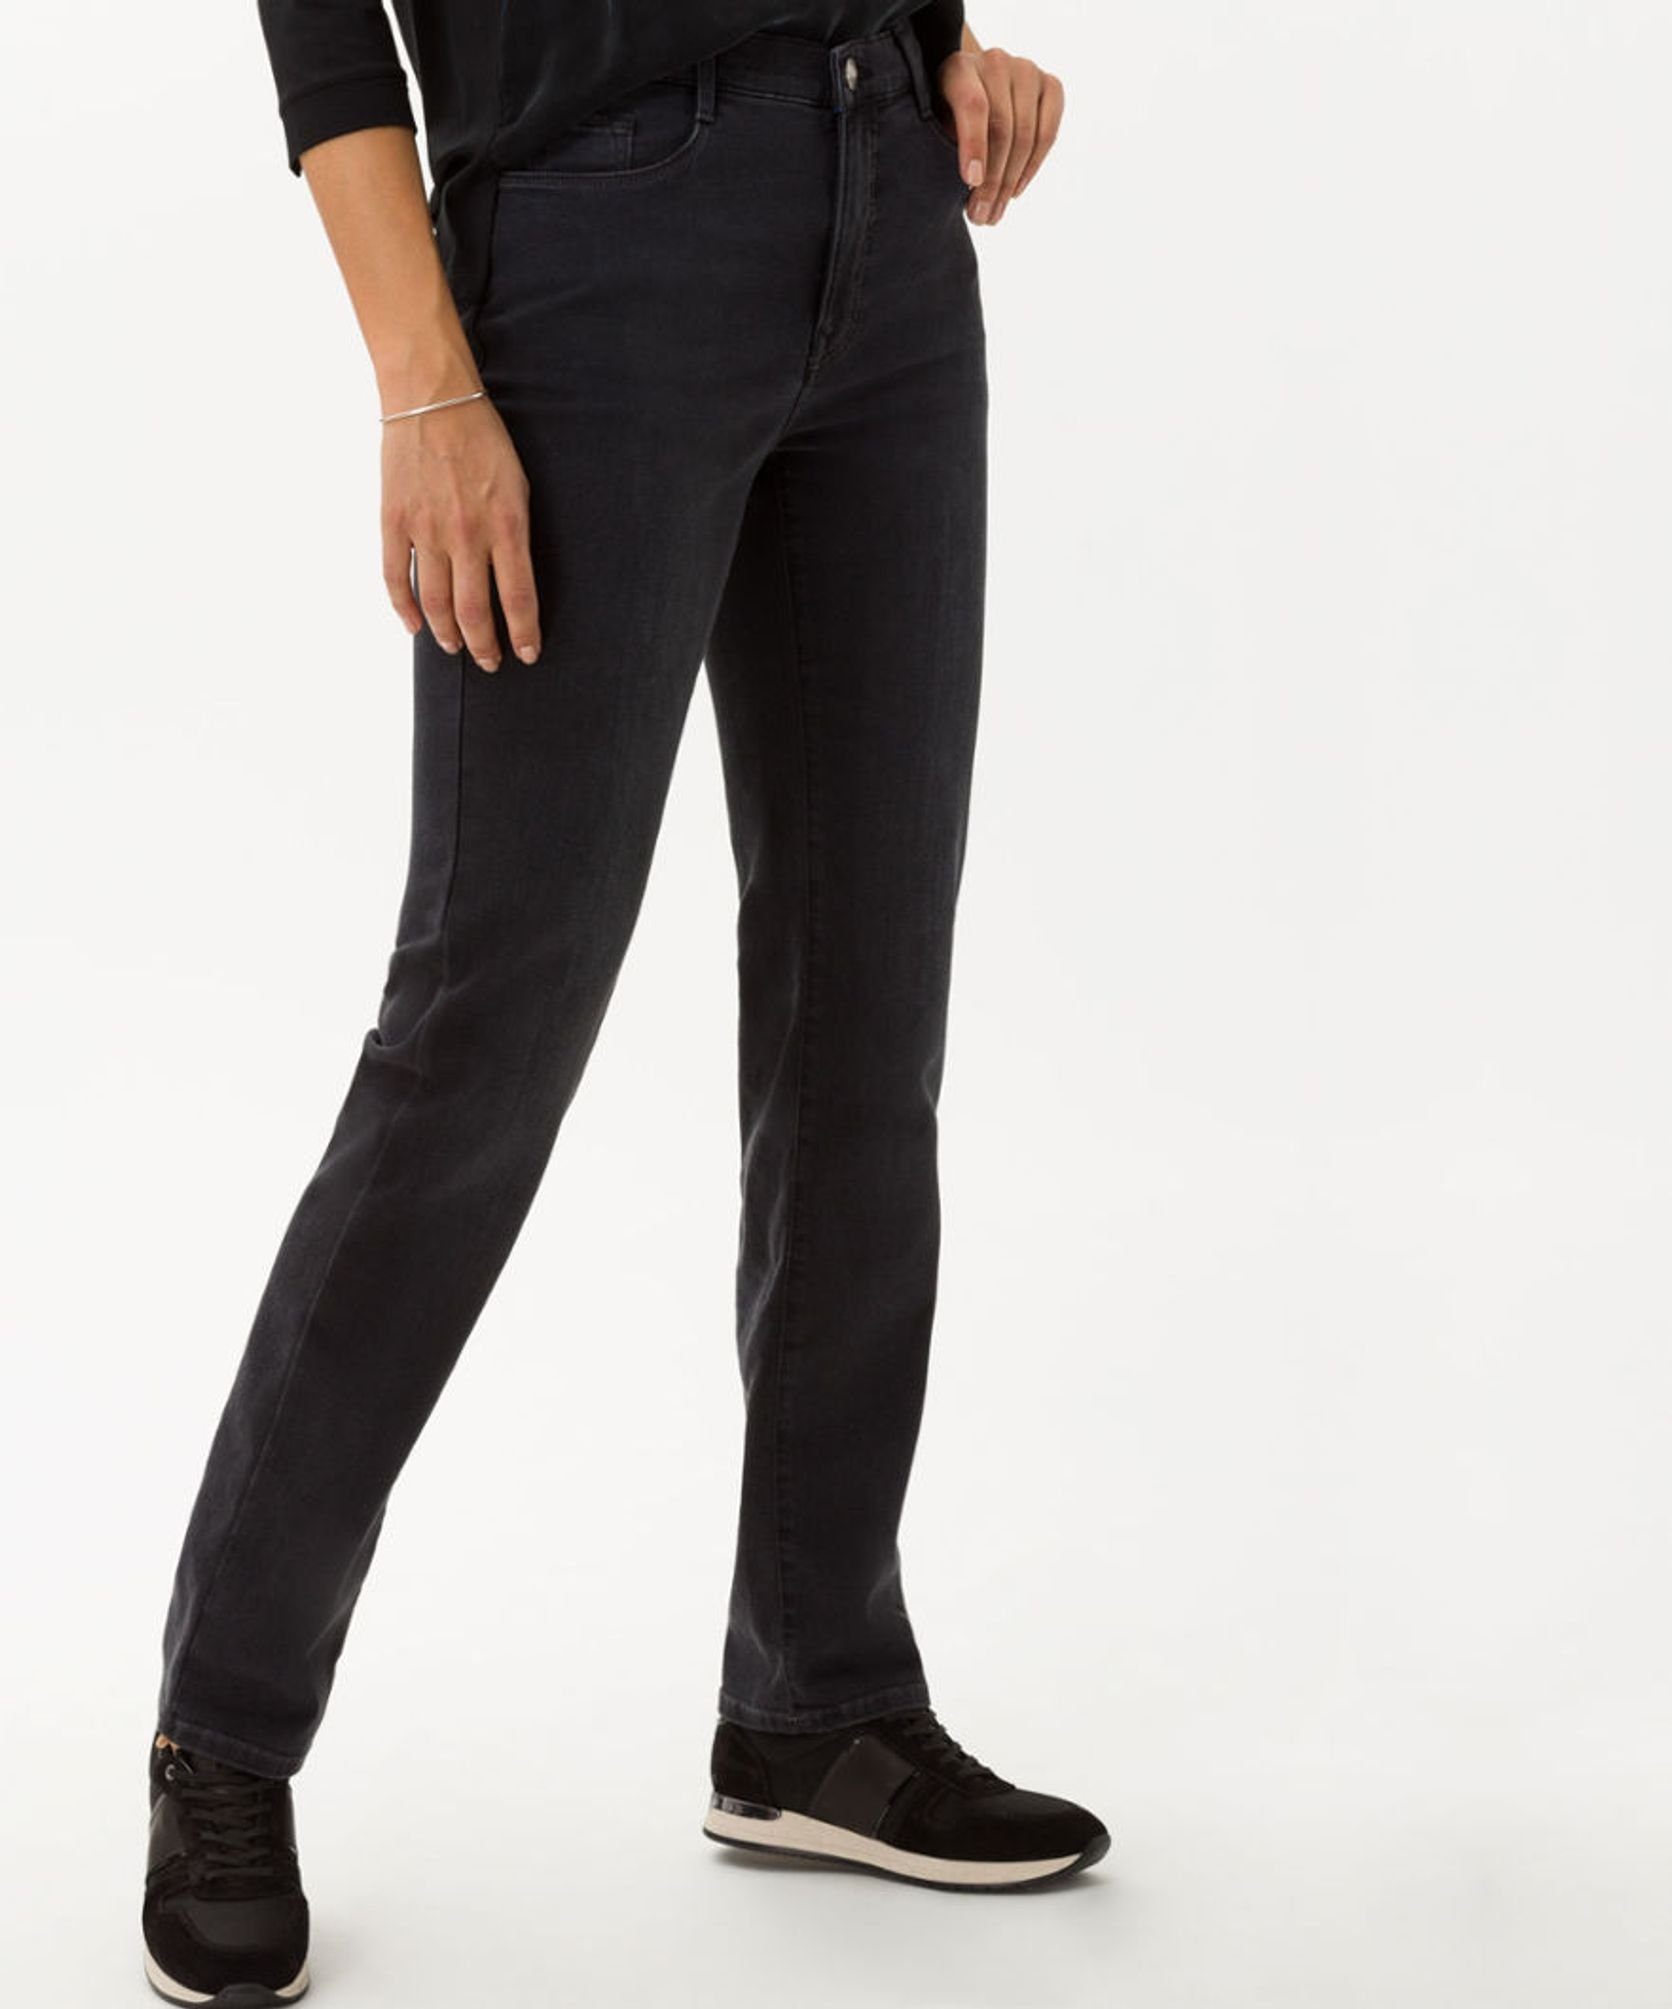 (03) 70-4000 5-Pocket-Jeans Brax used black